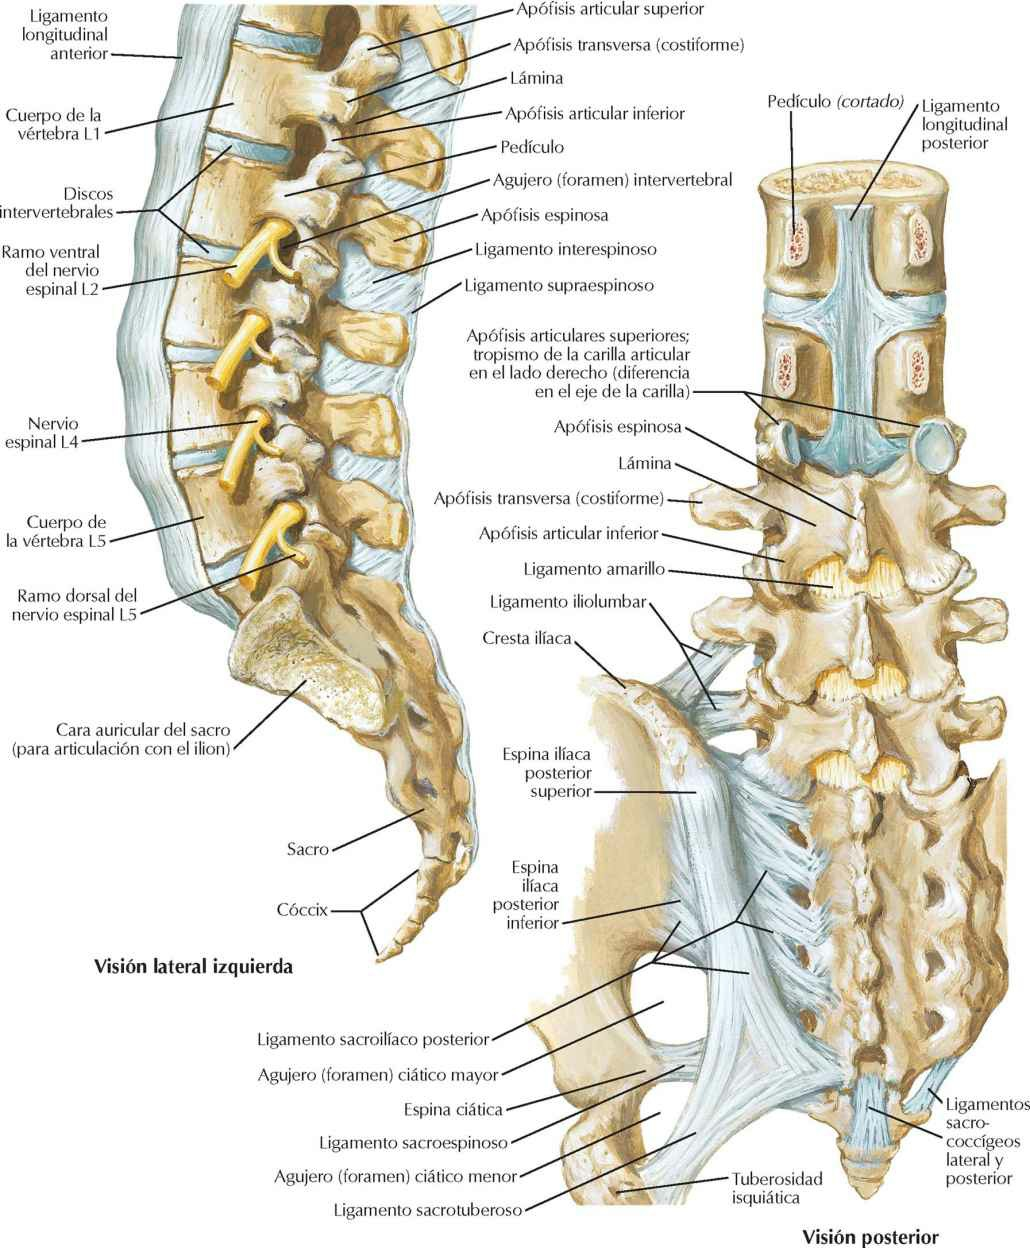 Ligamentos vertebrales: región
lumbosacra